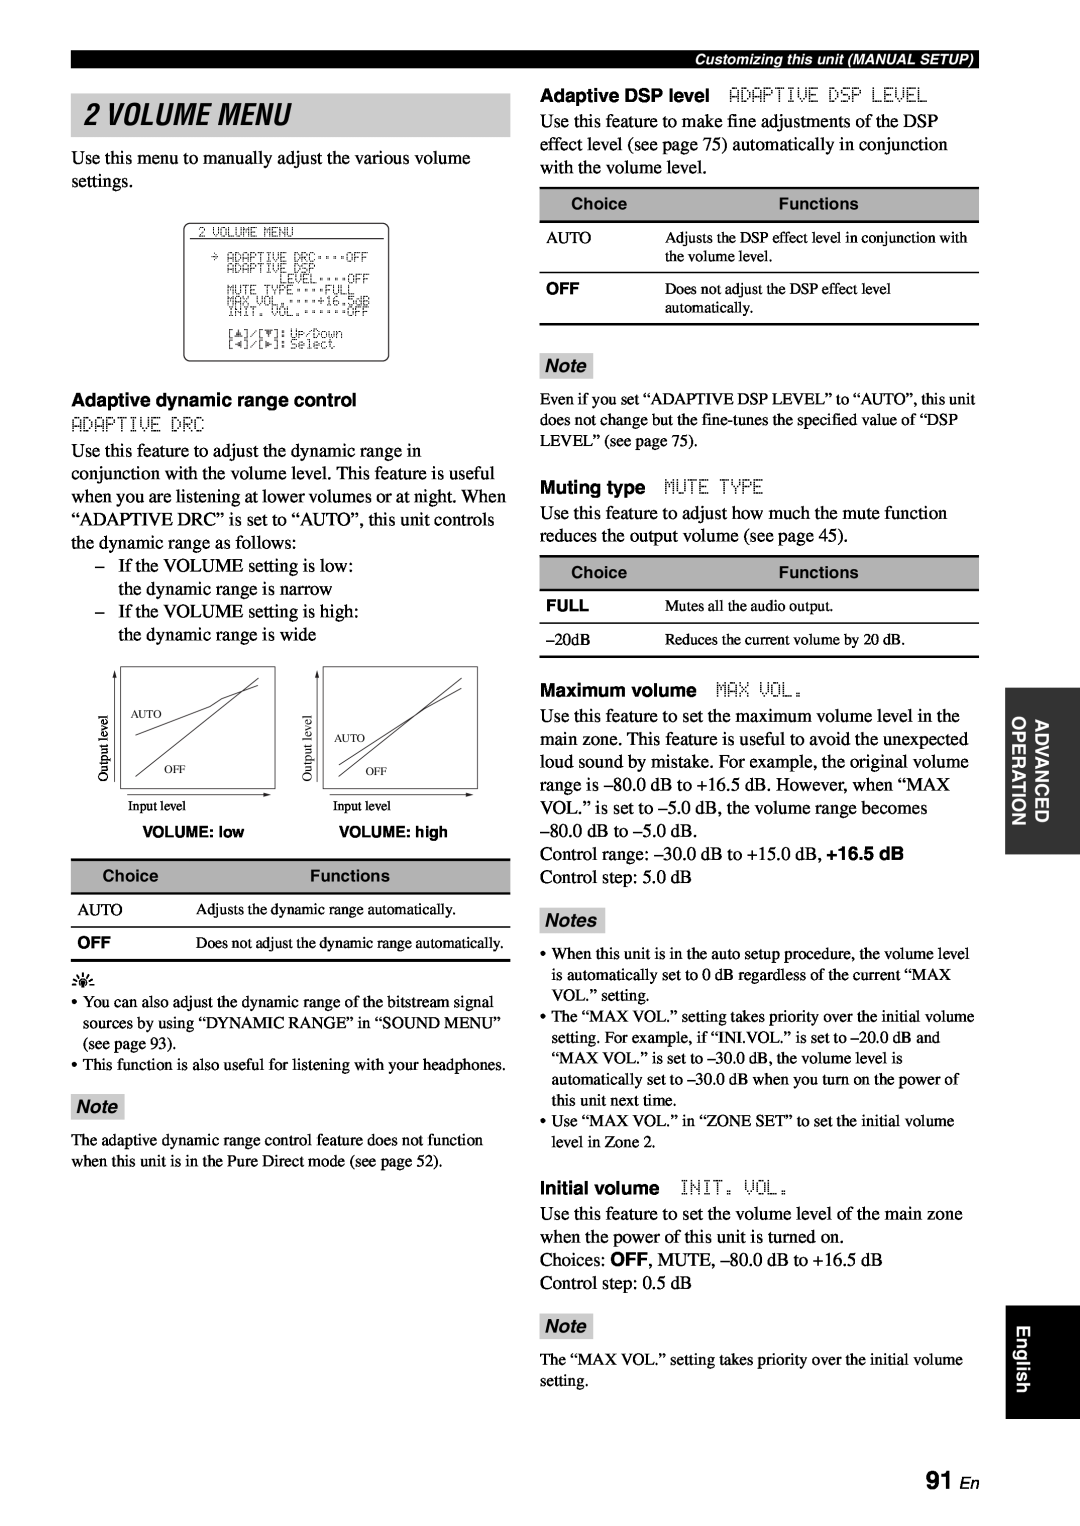 Yamaha RX-V863 owner manual Volume Menu, 91 En, Notes 